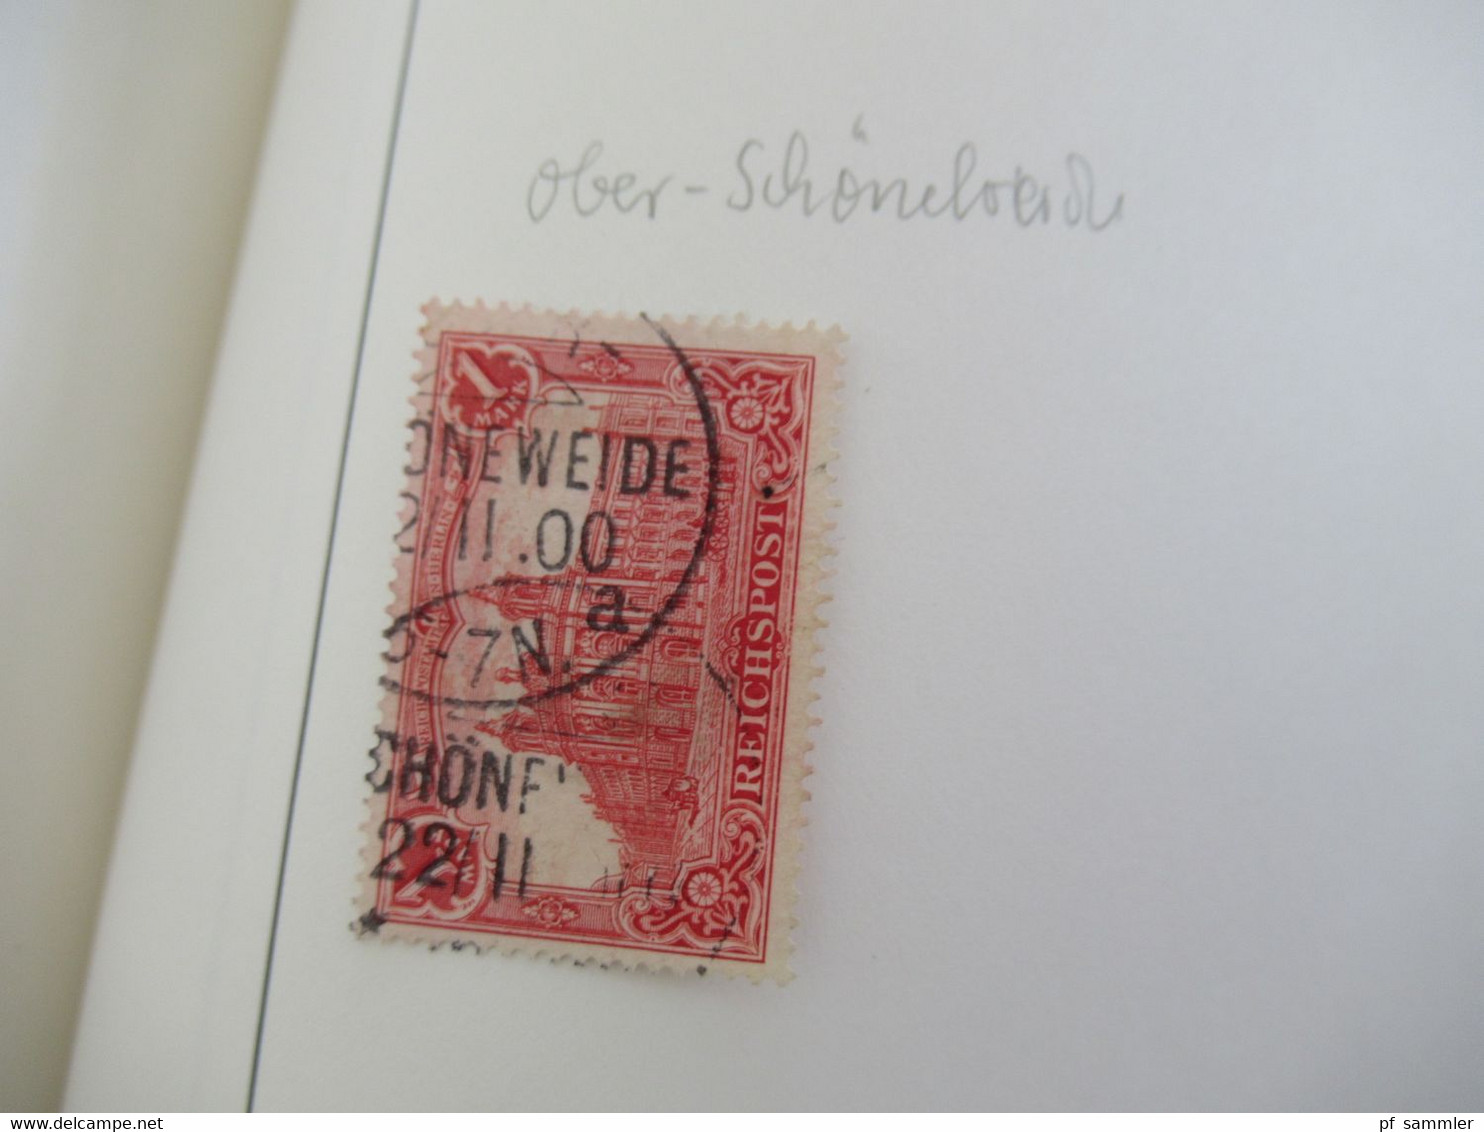 Spezial Slg. Berliner Postanstalten A - Z Stempelsammlung ab Pfennige mit schönen Stücken / Briefstücke Stöberposten!